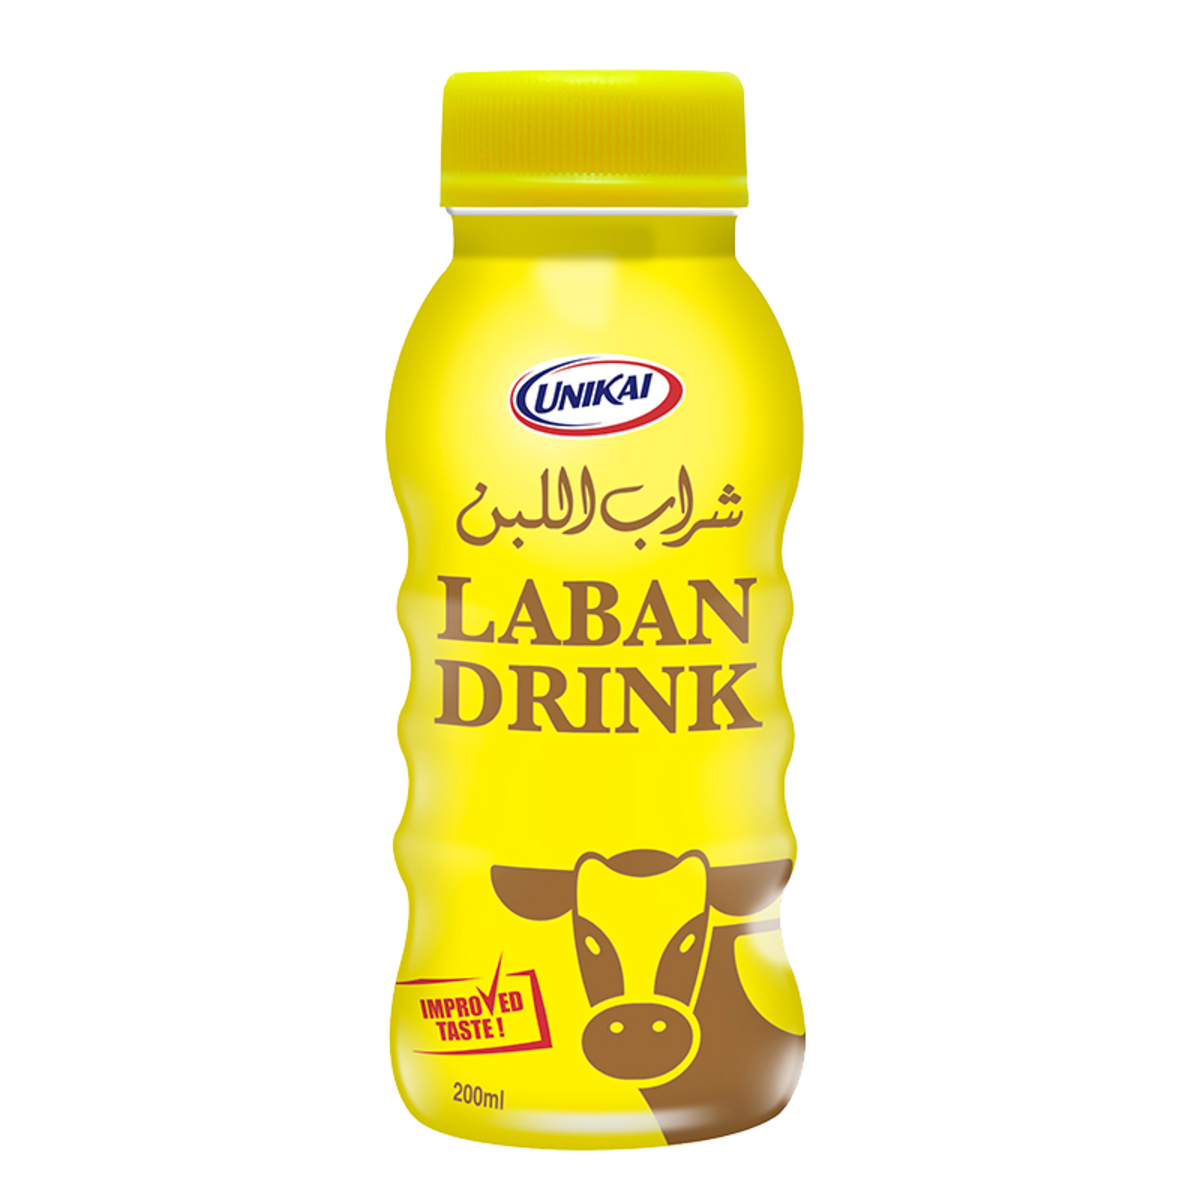 unikai Laban Drink 200ml